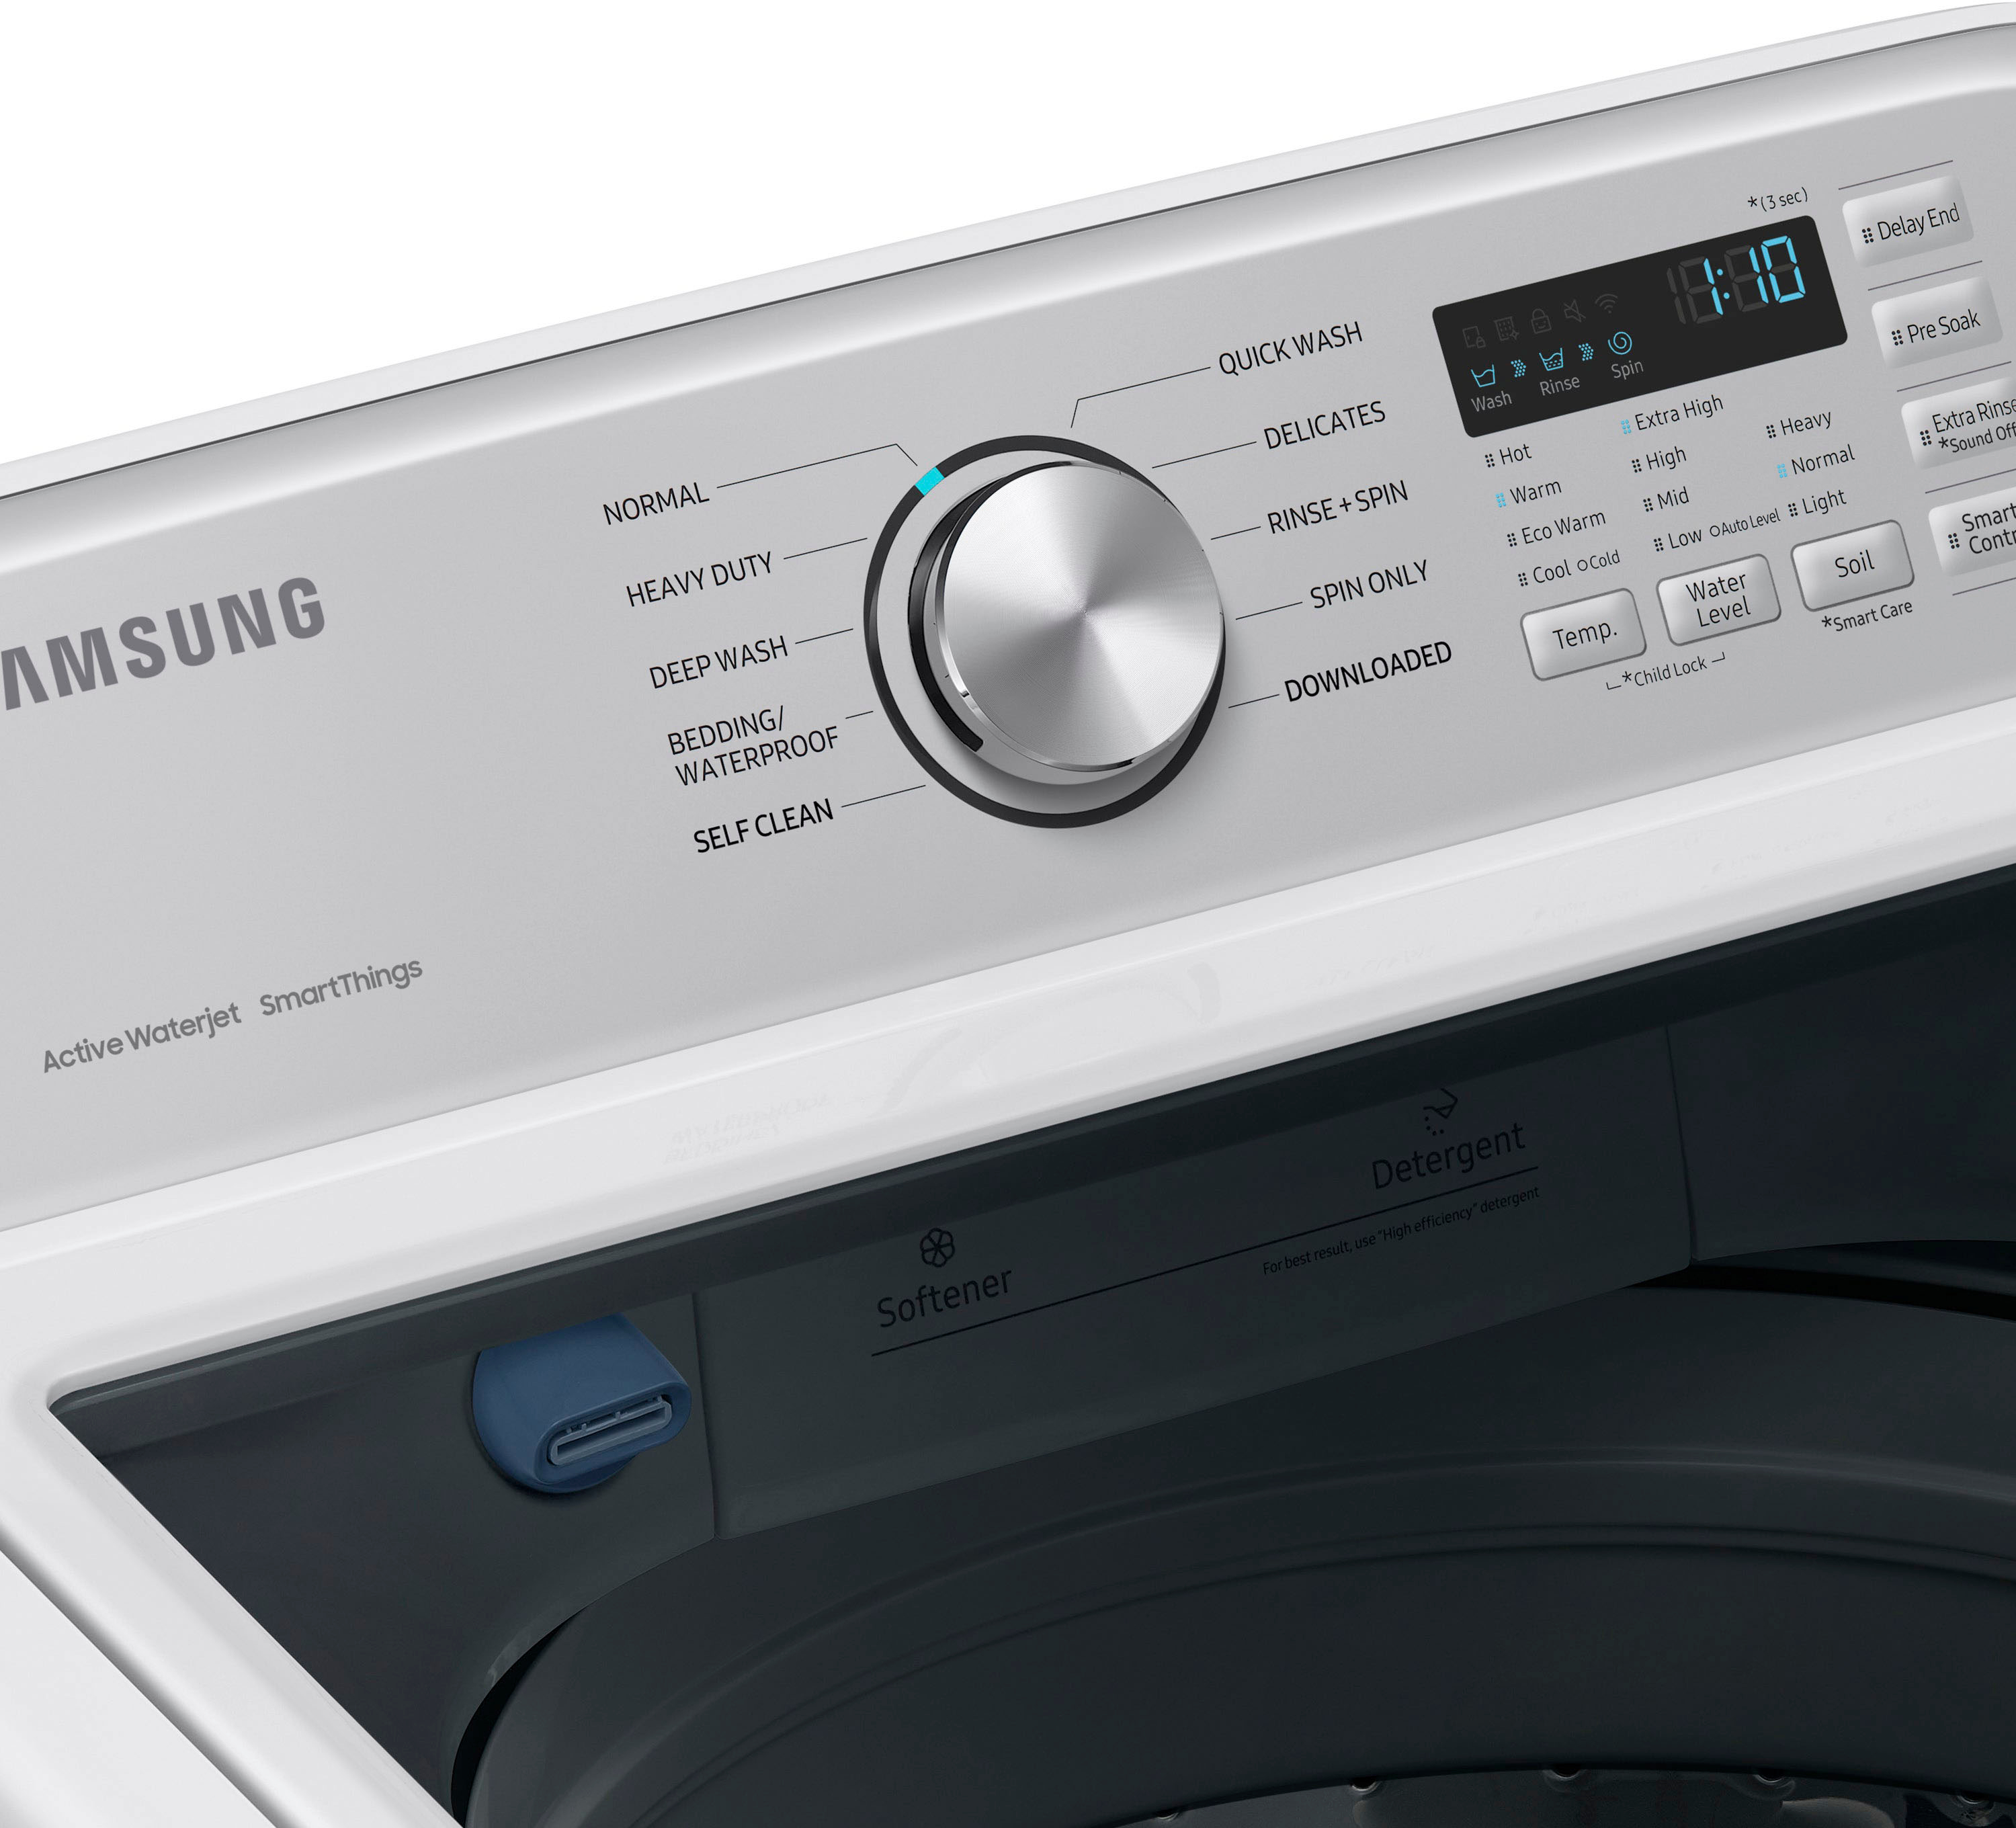 Samsung 4.7-cu ft High Efficiency Impeller Smart Top-Load Washer